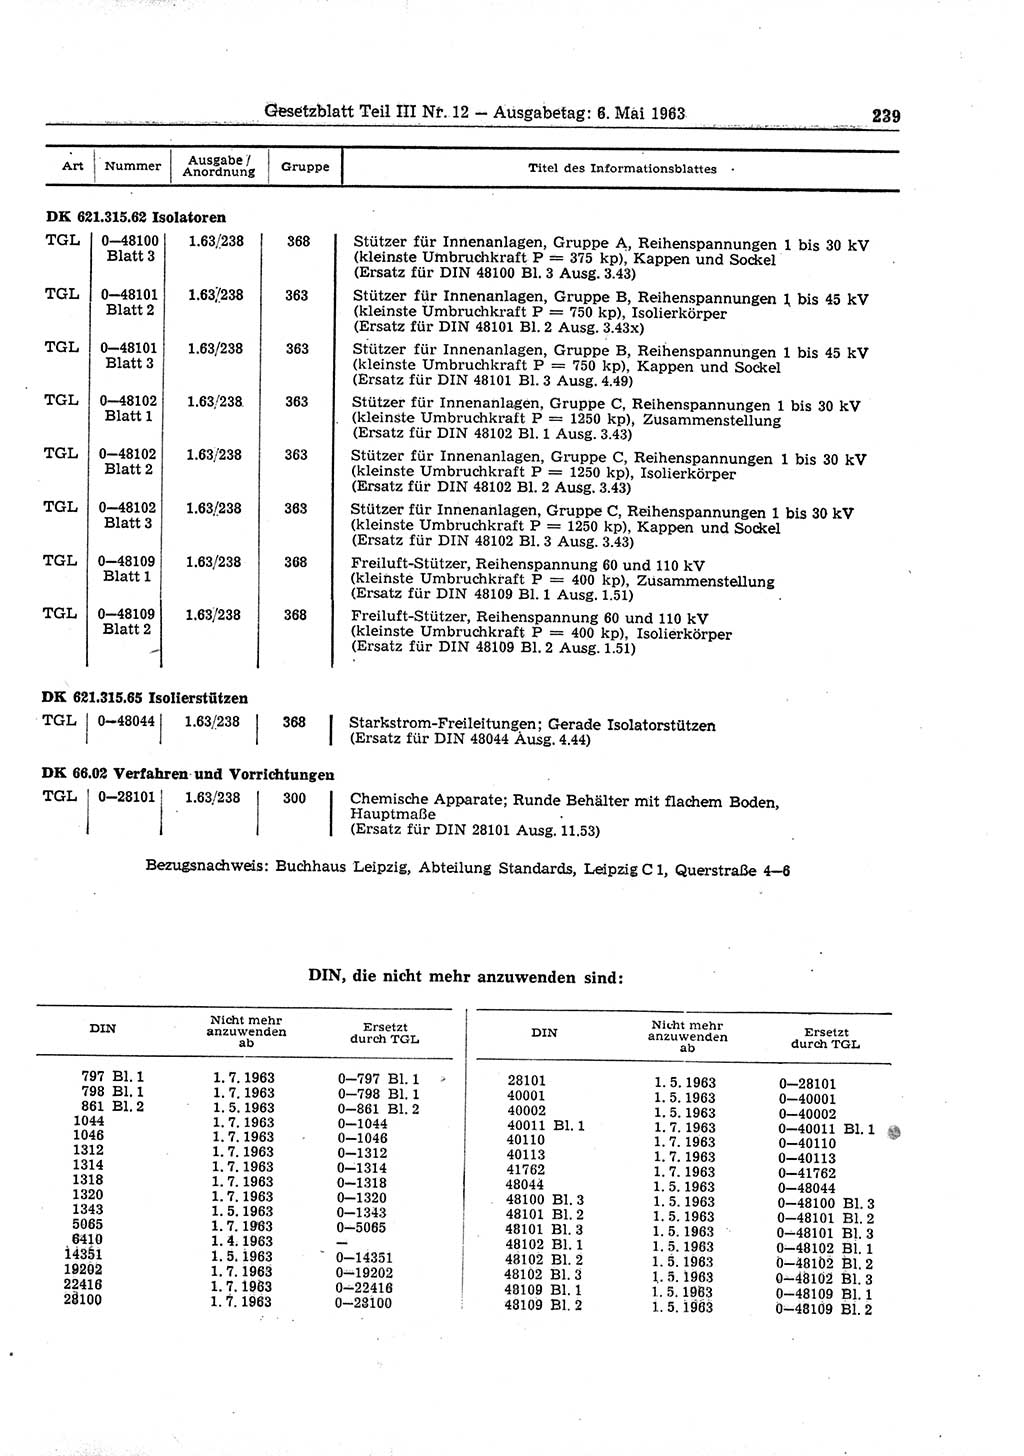 Gesetzblatt (GBl.) der Deutschen Demokratischen Republik (DDR) Teil ⅠⅠⅠ 1963, Seite 239 (GBl. DDR ⅠⅠⅠ 1963, S. 239)